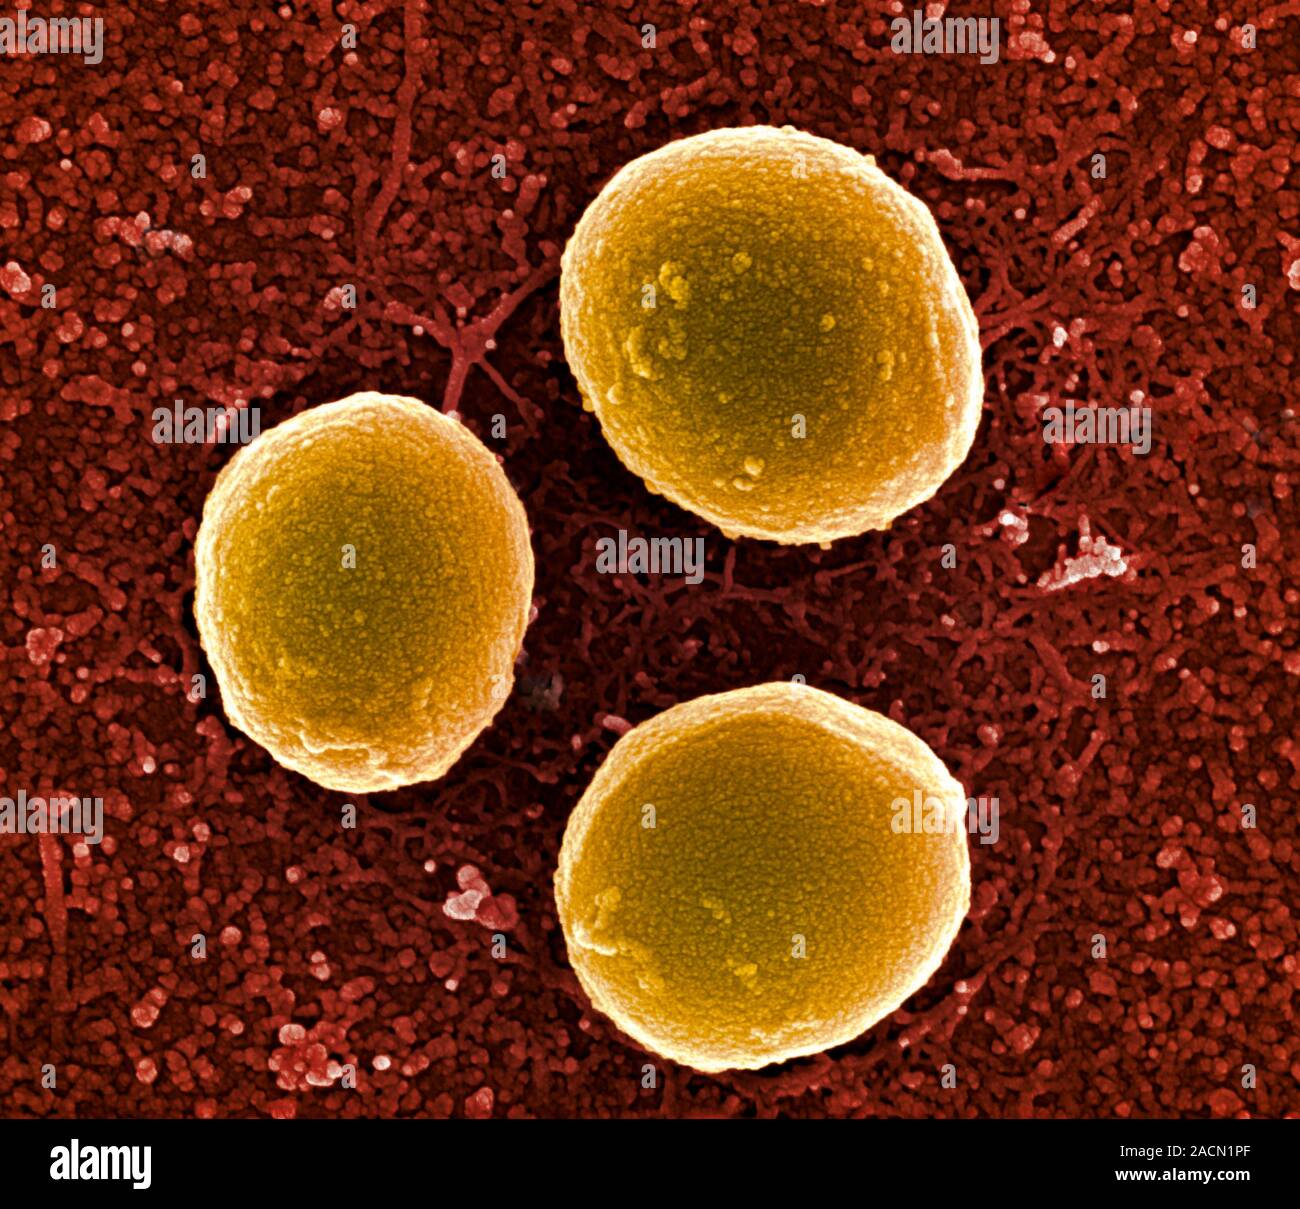 1 staphylococcus aureus